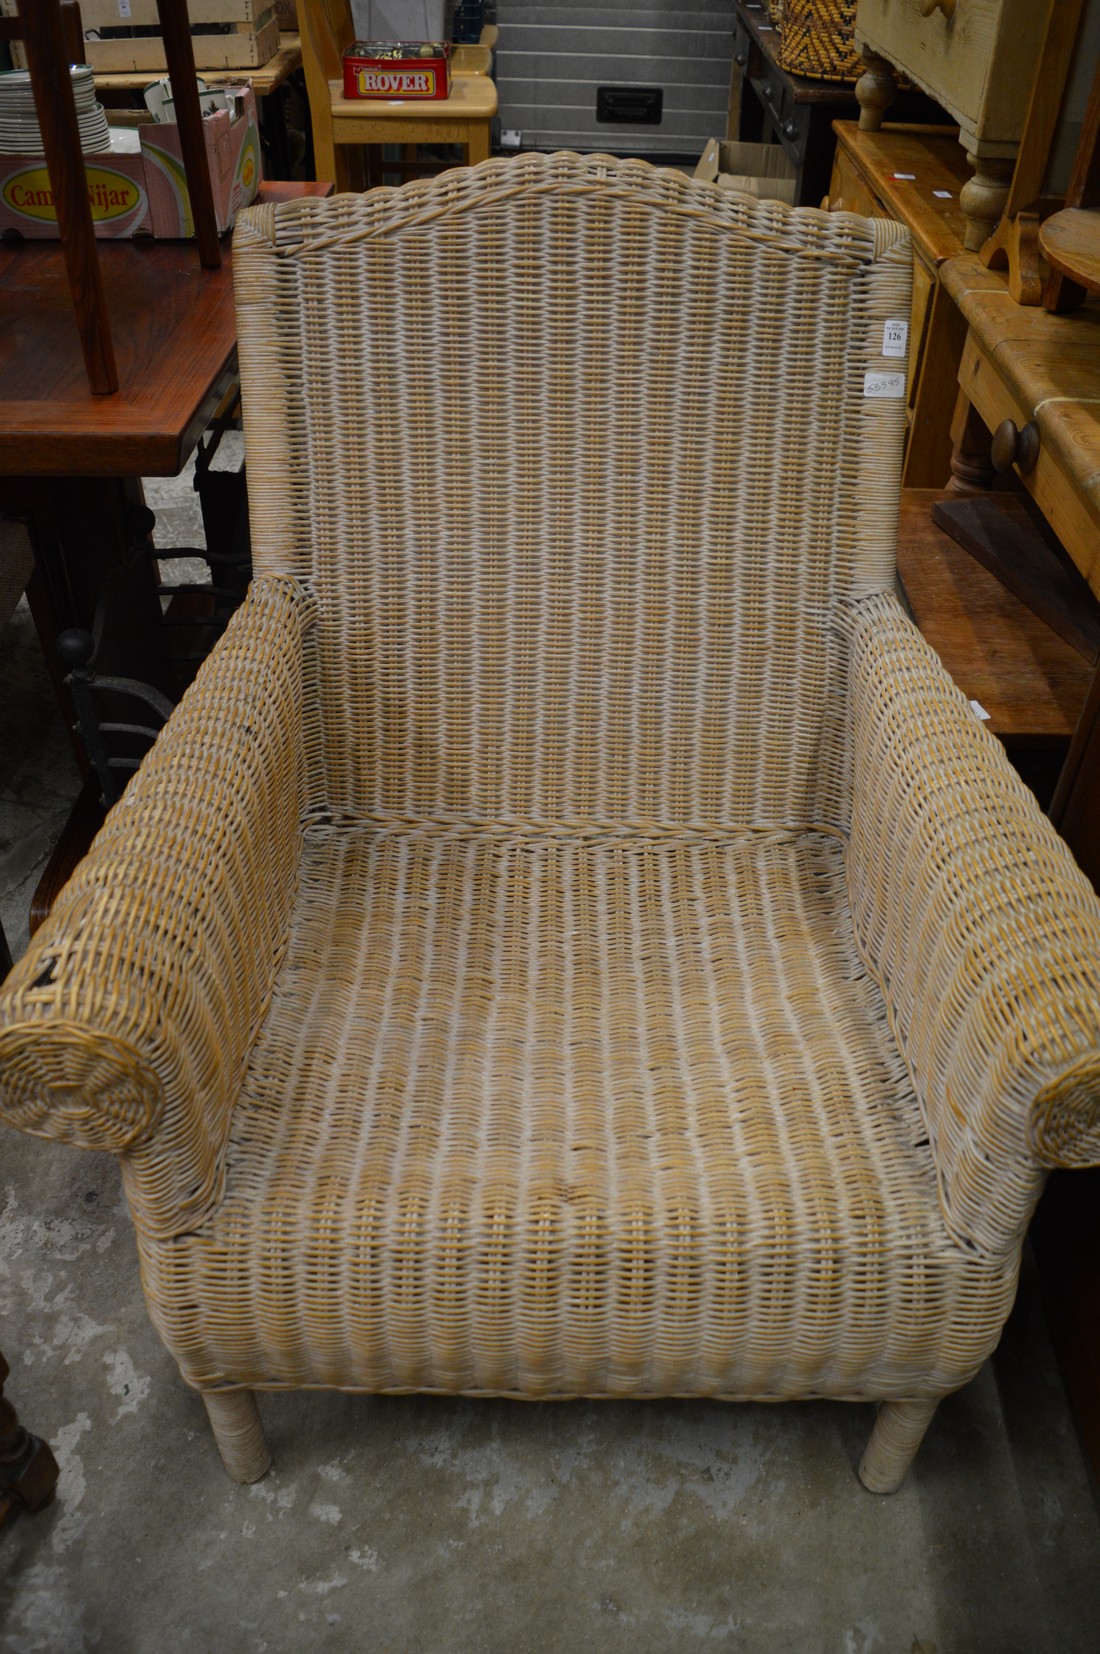 A wicker armchair.